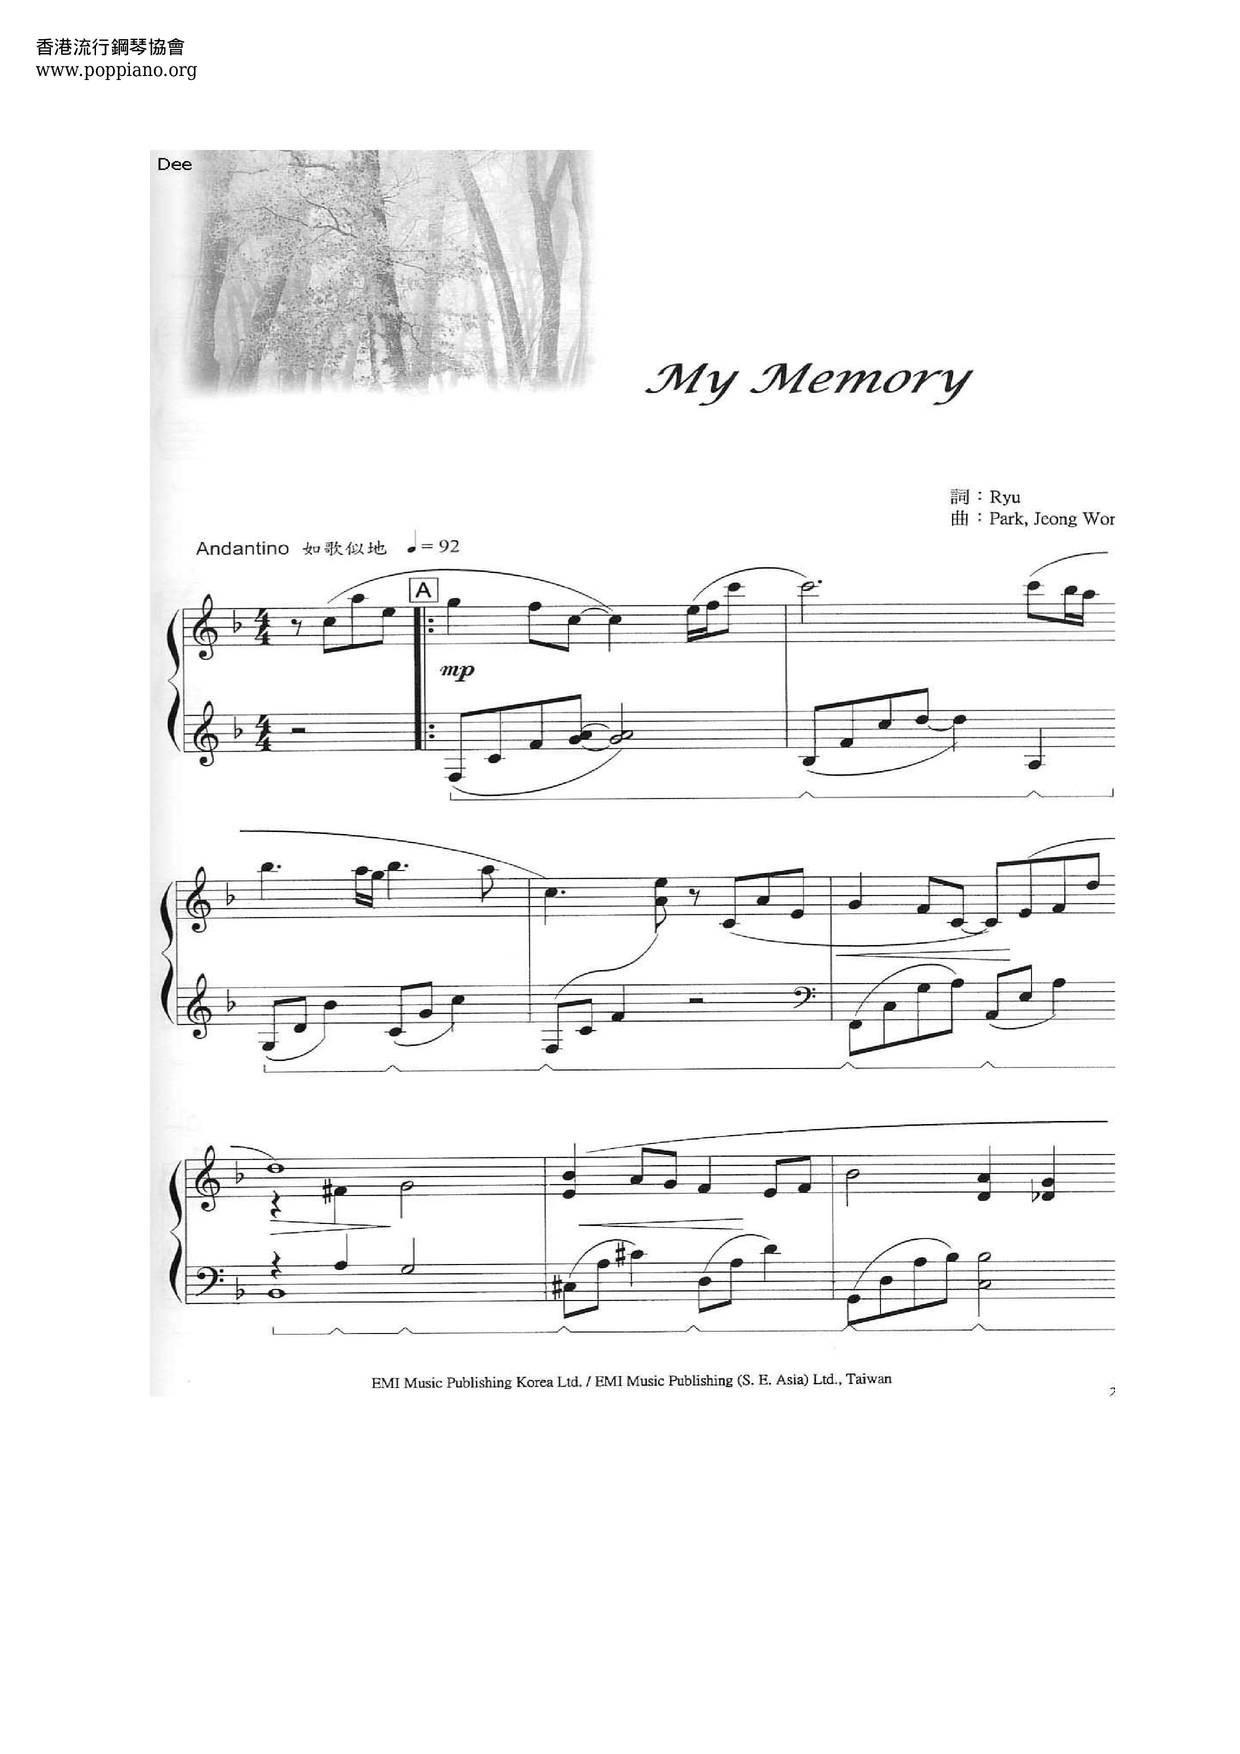 Winter Sonata - My Memory Score